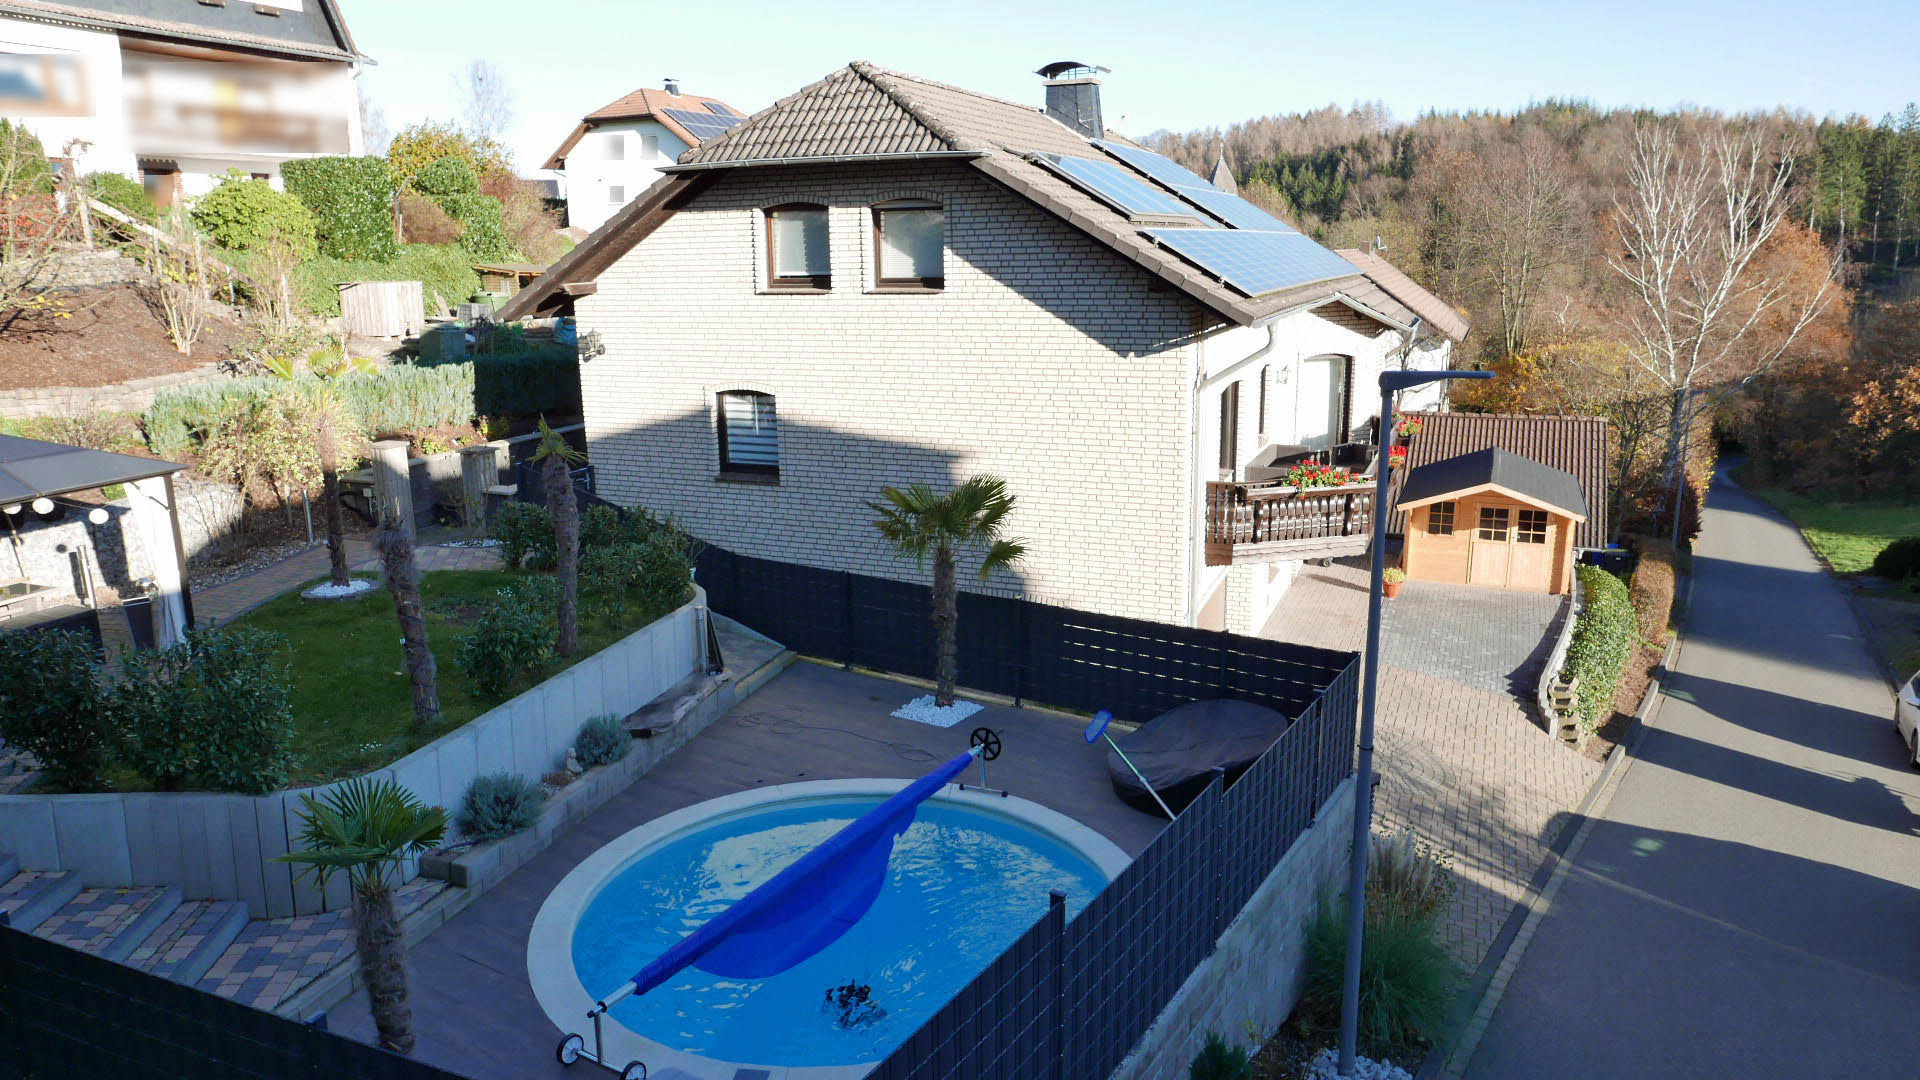 184 2-229 - Katzwinkel: Modernes Wohnhaus mit Pool, Solar- und Photovoltaikanlage